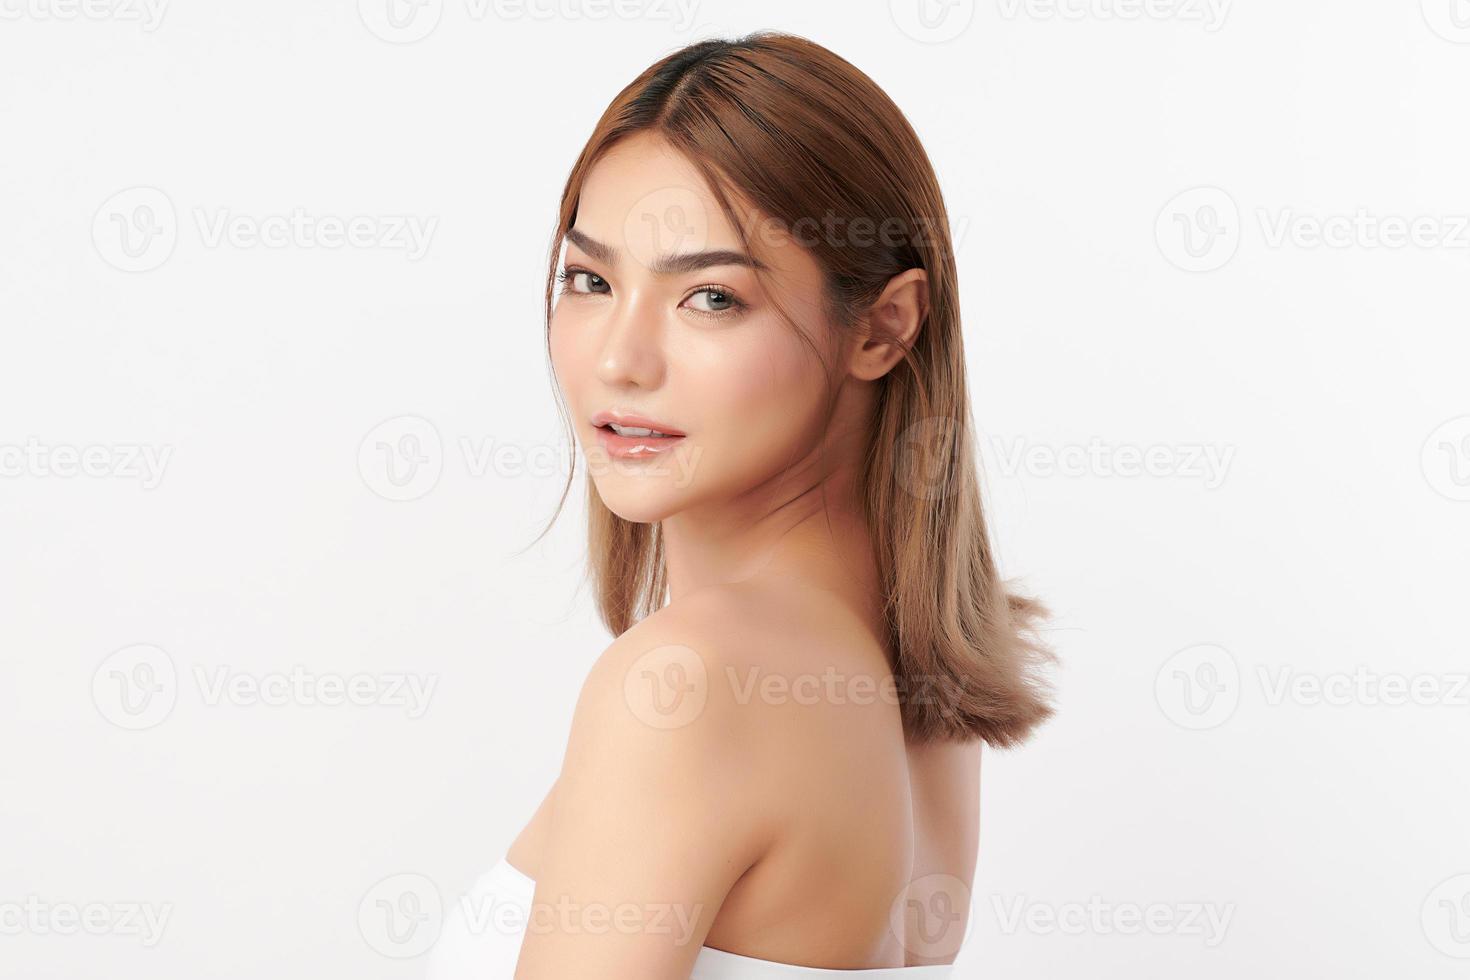 bella giovane donna asiatica con pelle fresca e pulita su sfondo bianco, cura del viso, trattamento viso, cosmetologia, bellezza e spa, ritratto di donne asiatiche. foto